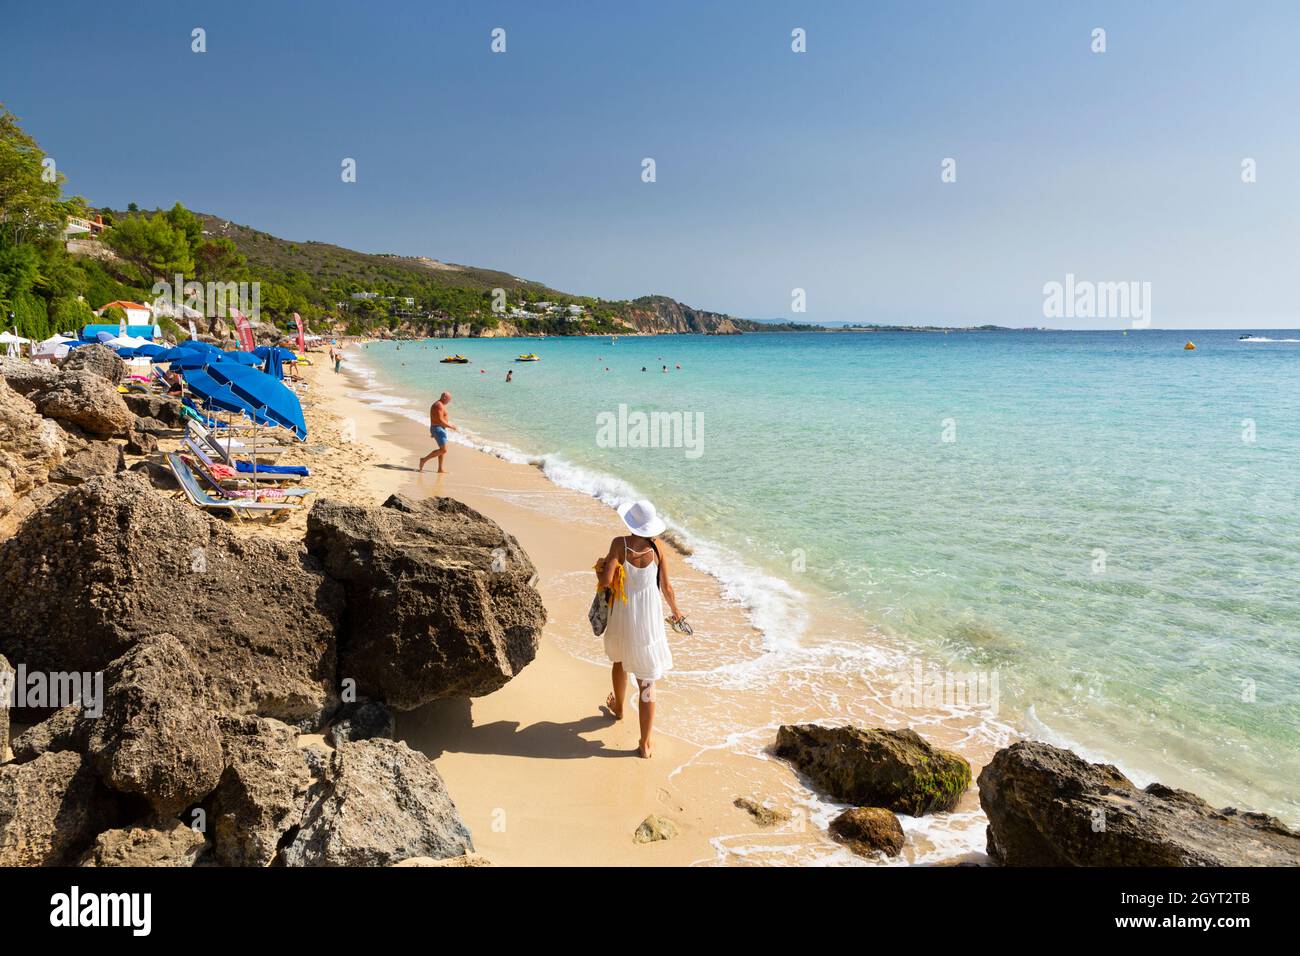 A woman walking on Makris Gialos Beach near Argostoli, Kefalonia, Ionian Islands, Greece Stock Photo